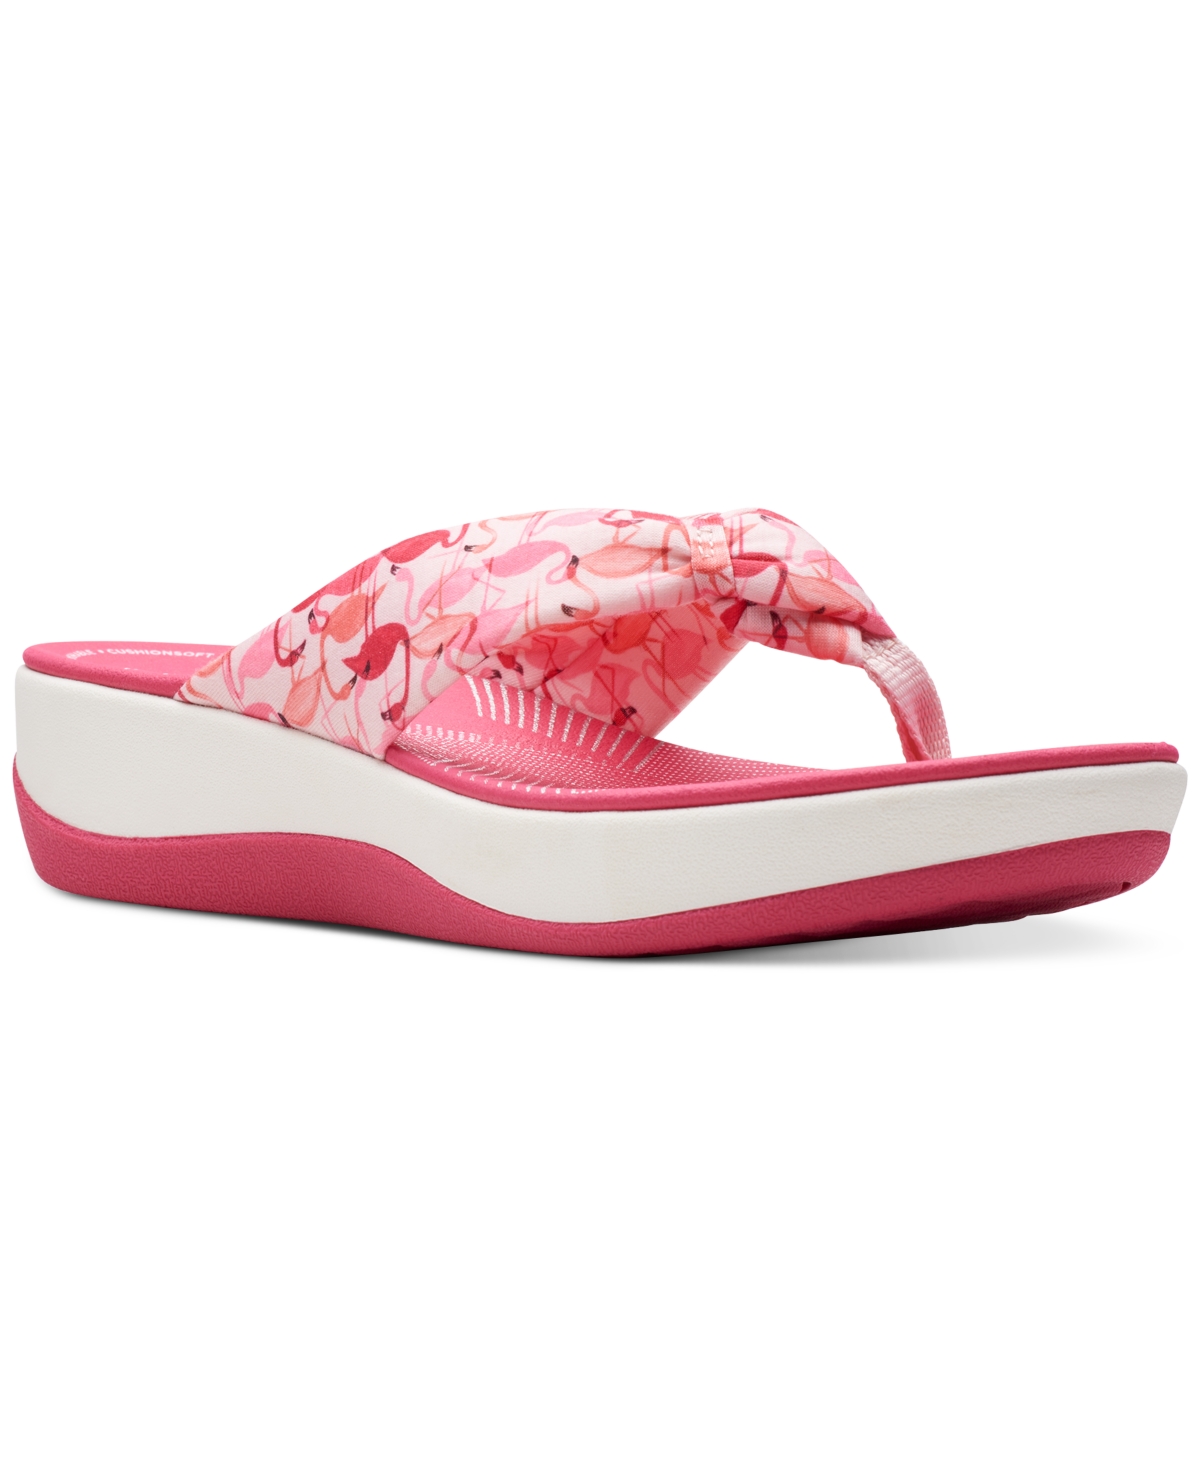 Clarks Women's Arla Glison Slip-on Platform Wedge Sandals In Pink Combi